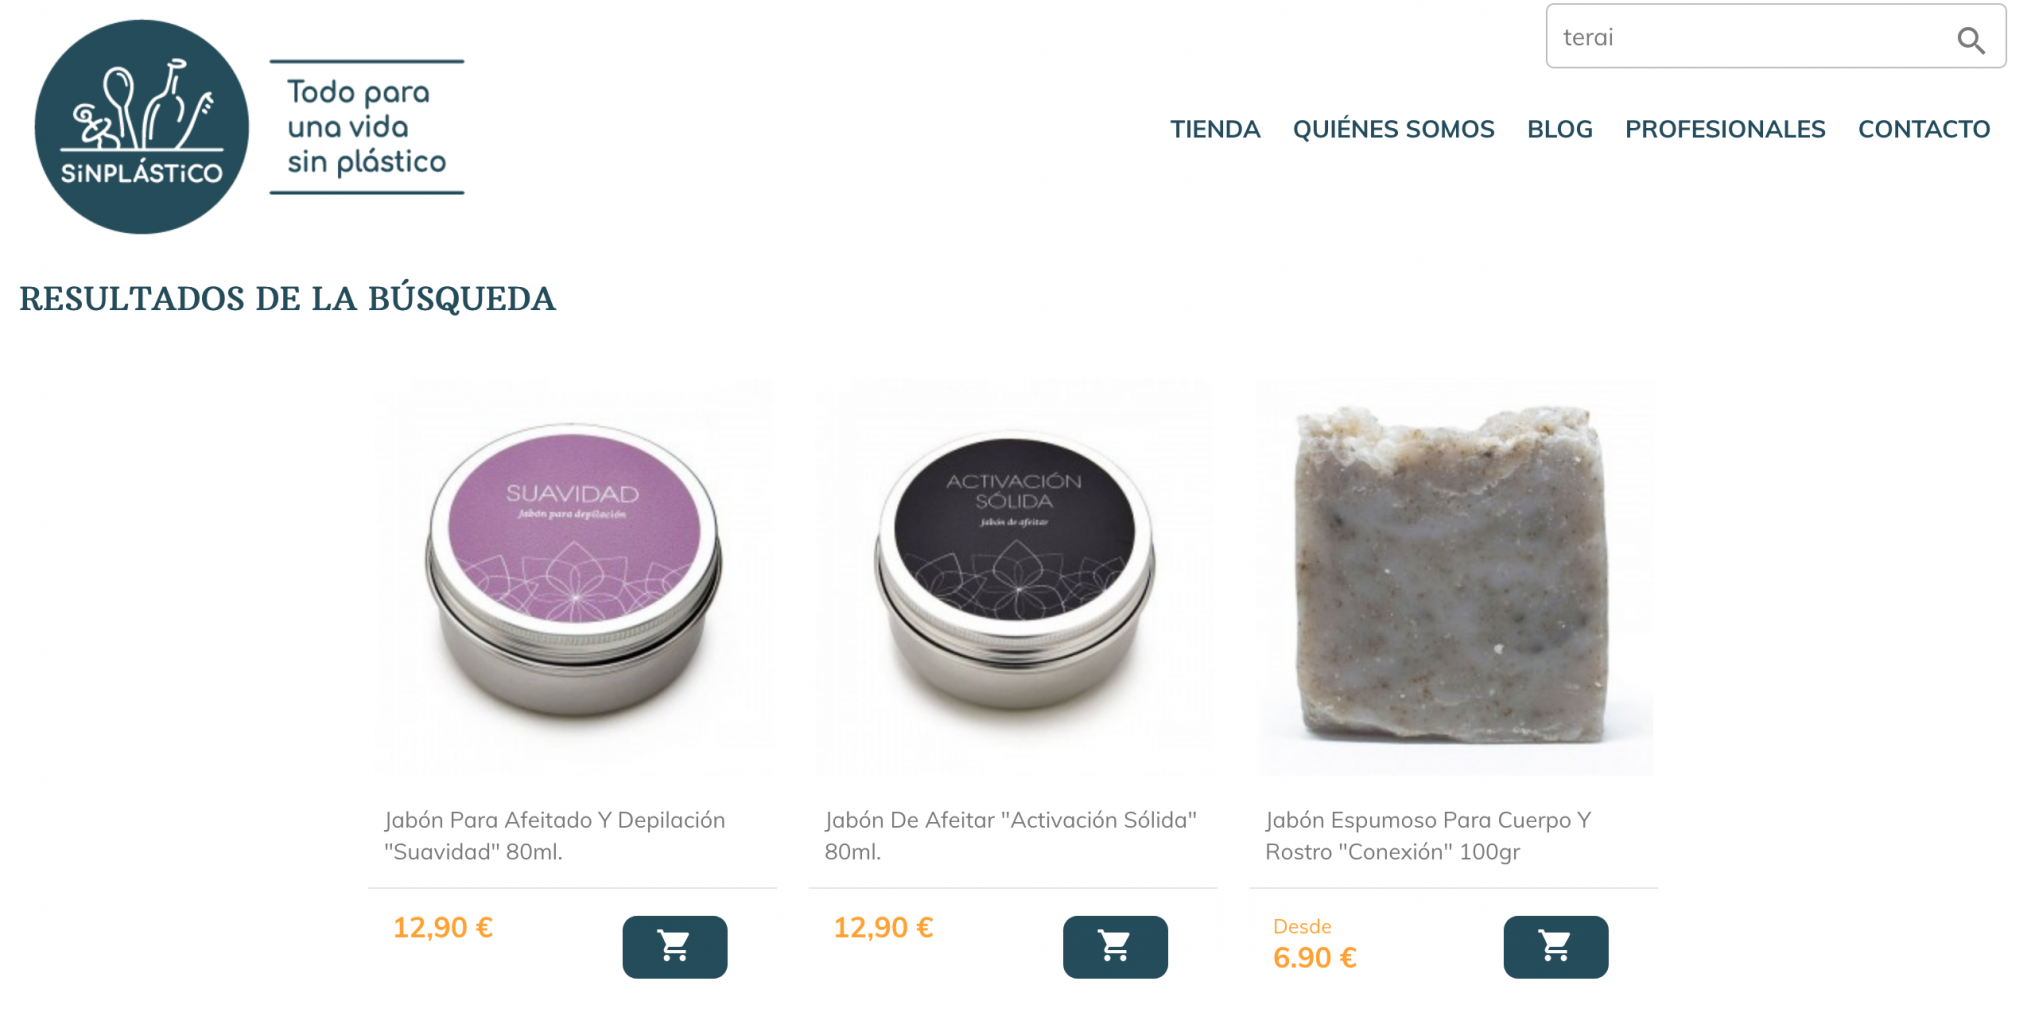 terai cosmética natural es un producto artesanal y está de venta en tienda online y tienda física en Bilbao. Apostamos por un mundo sin plático